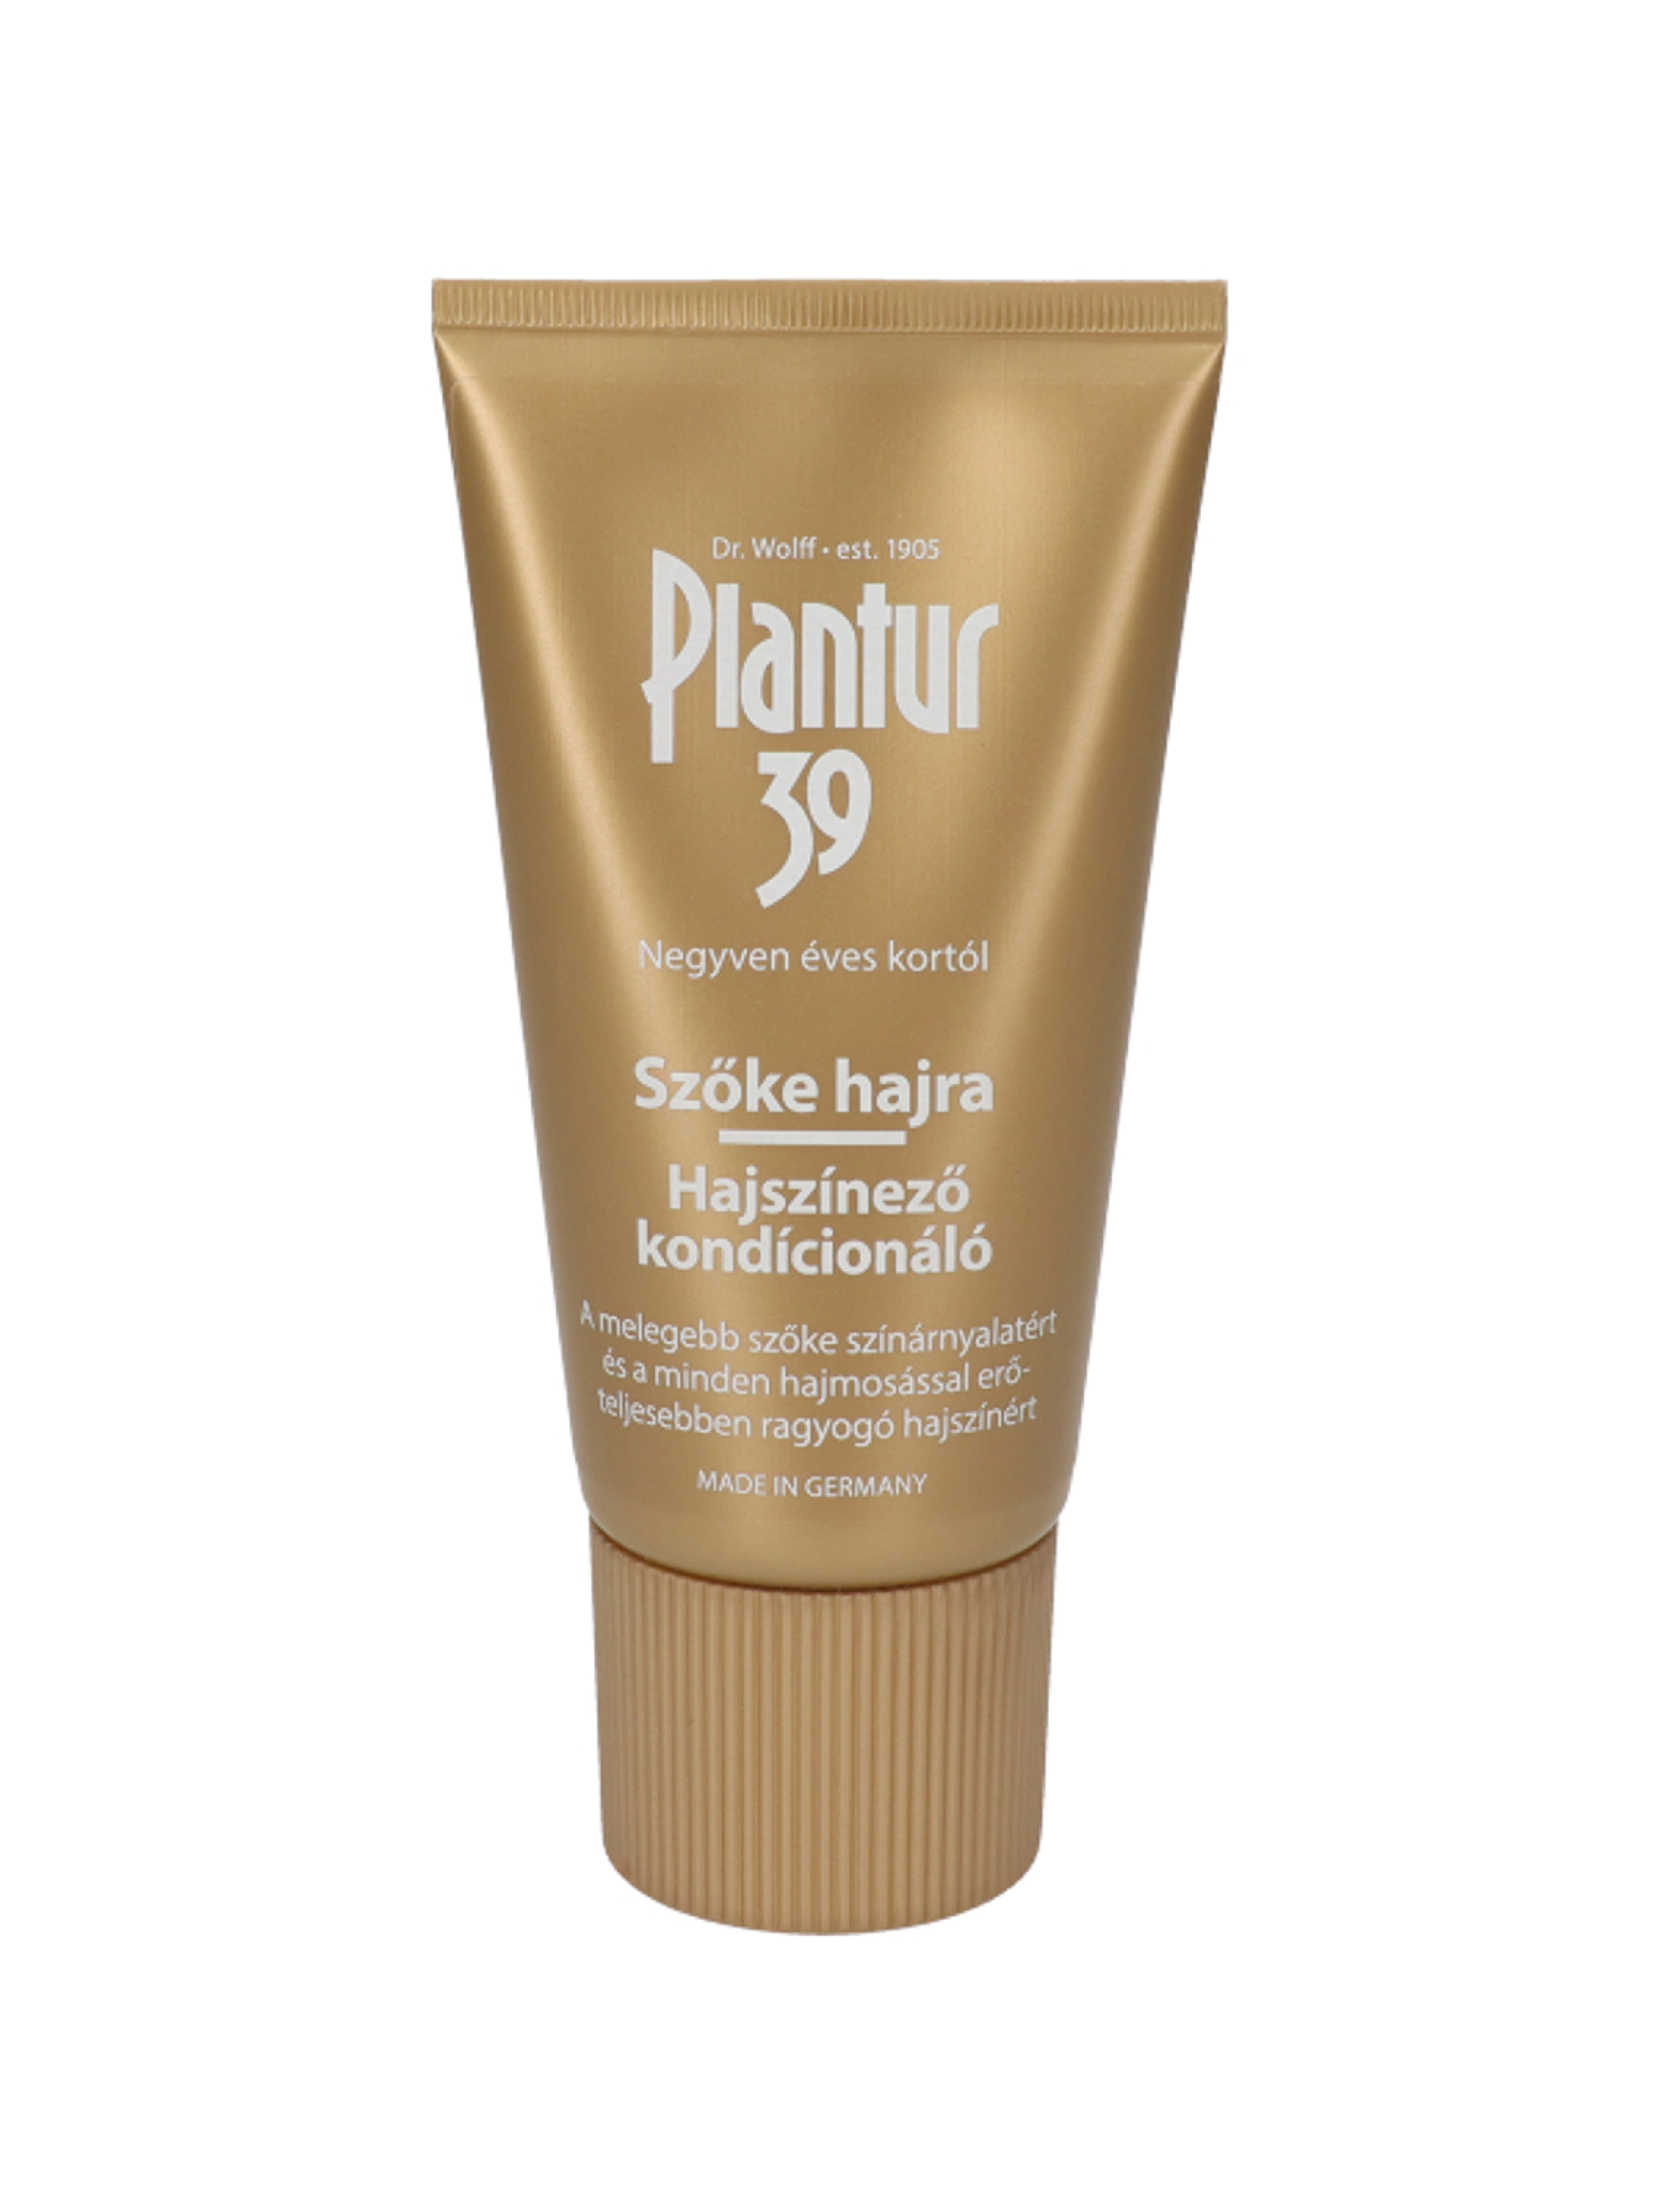 Plantur 39 hajszínező balzsam szőke hajra - 150 ml